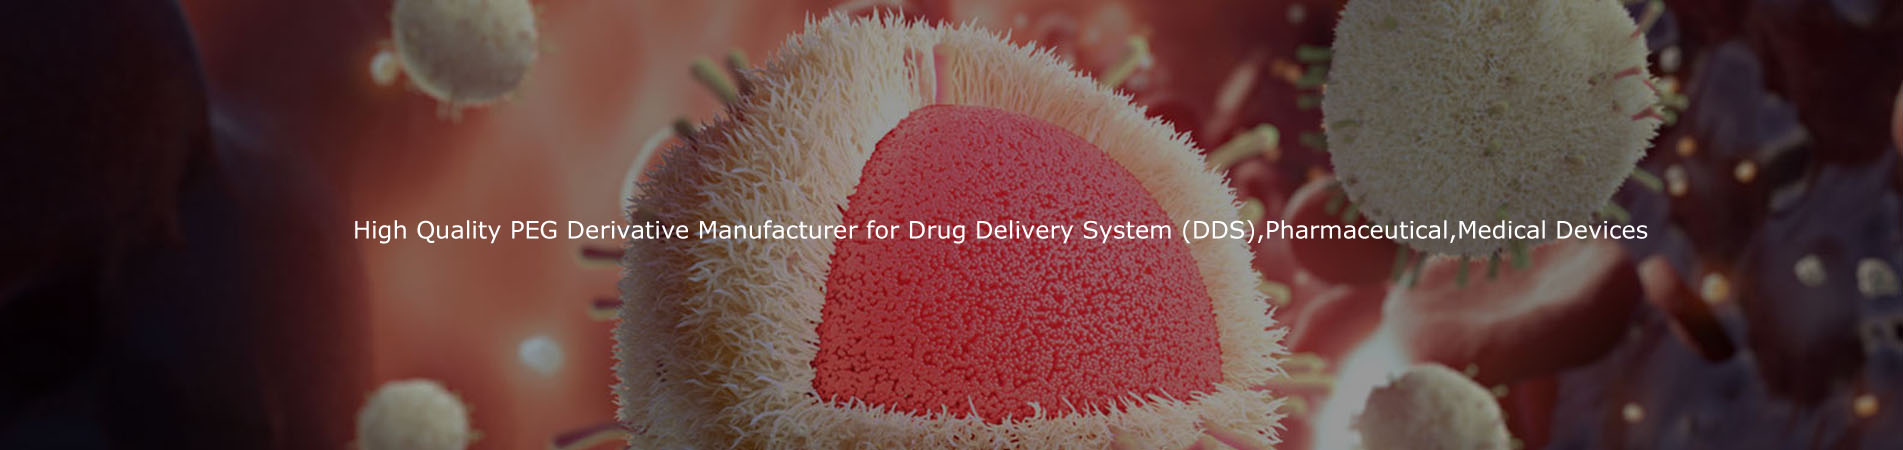 Высококачественный производитель PEG производной для системы доставки лекарств (DDS), фармацевтические, медицинские приборы